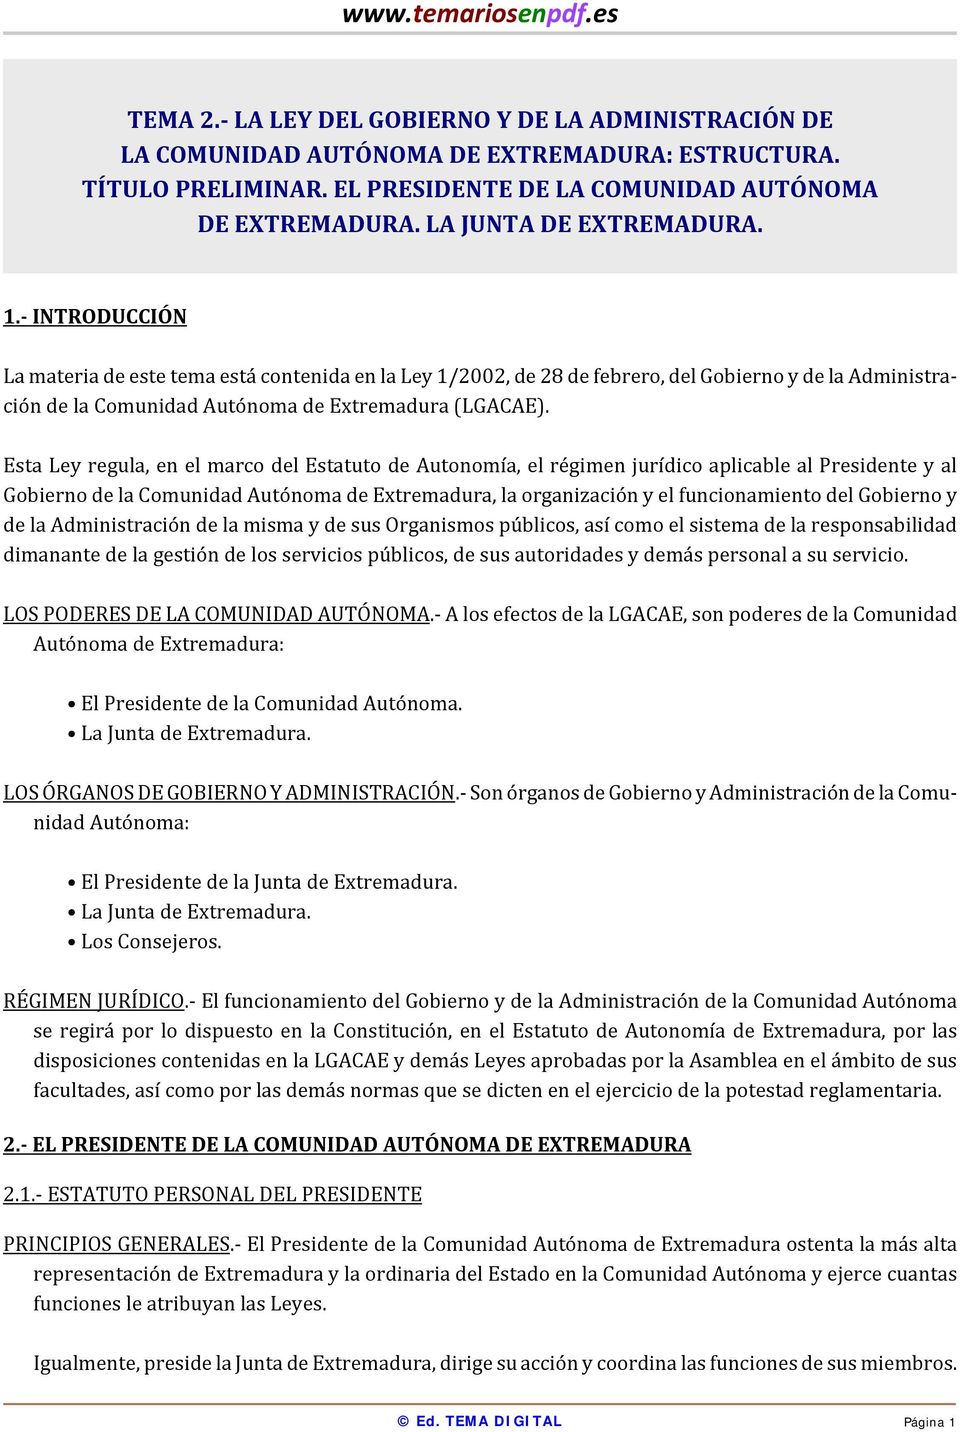 INTRODUCCIÓN La materia de este tema está contenida en la Ley 1/2002, de 28 de febrero, del Gobierno y de la Administración de la Comunidad Autónoma de Extremadura (LGACAE).